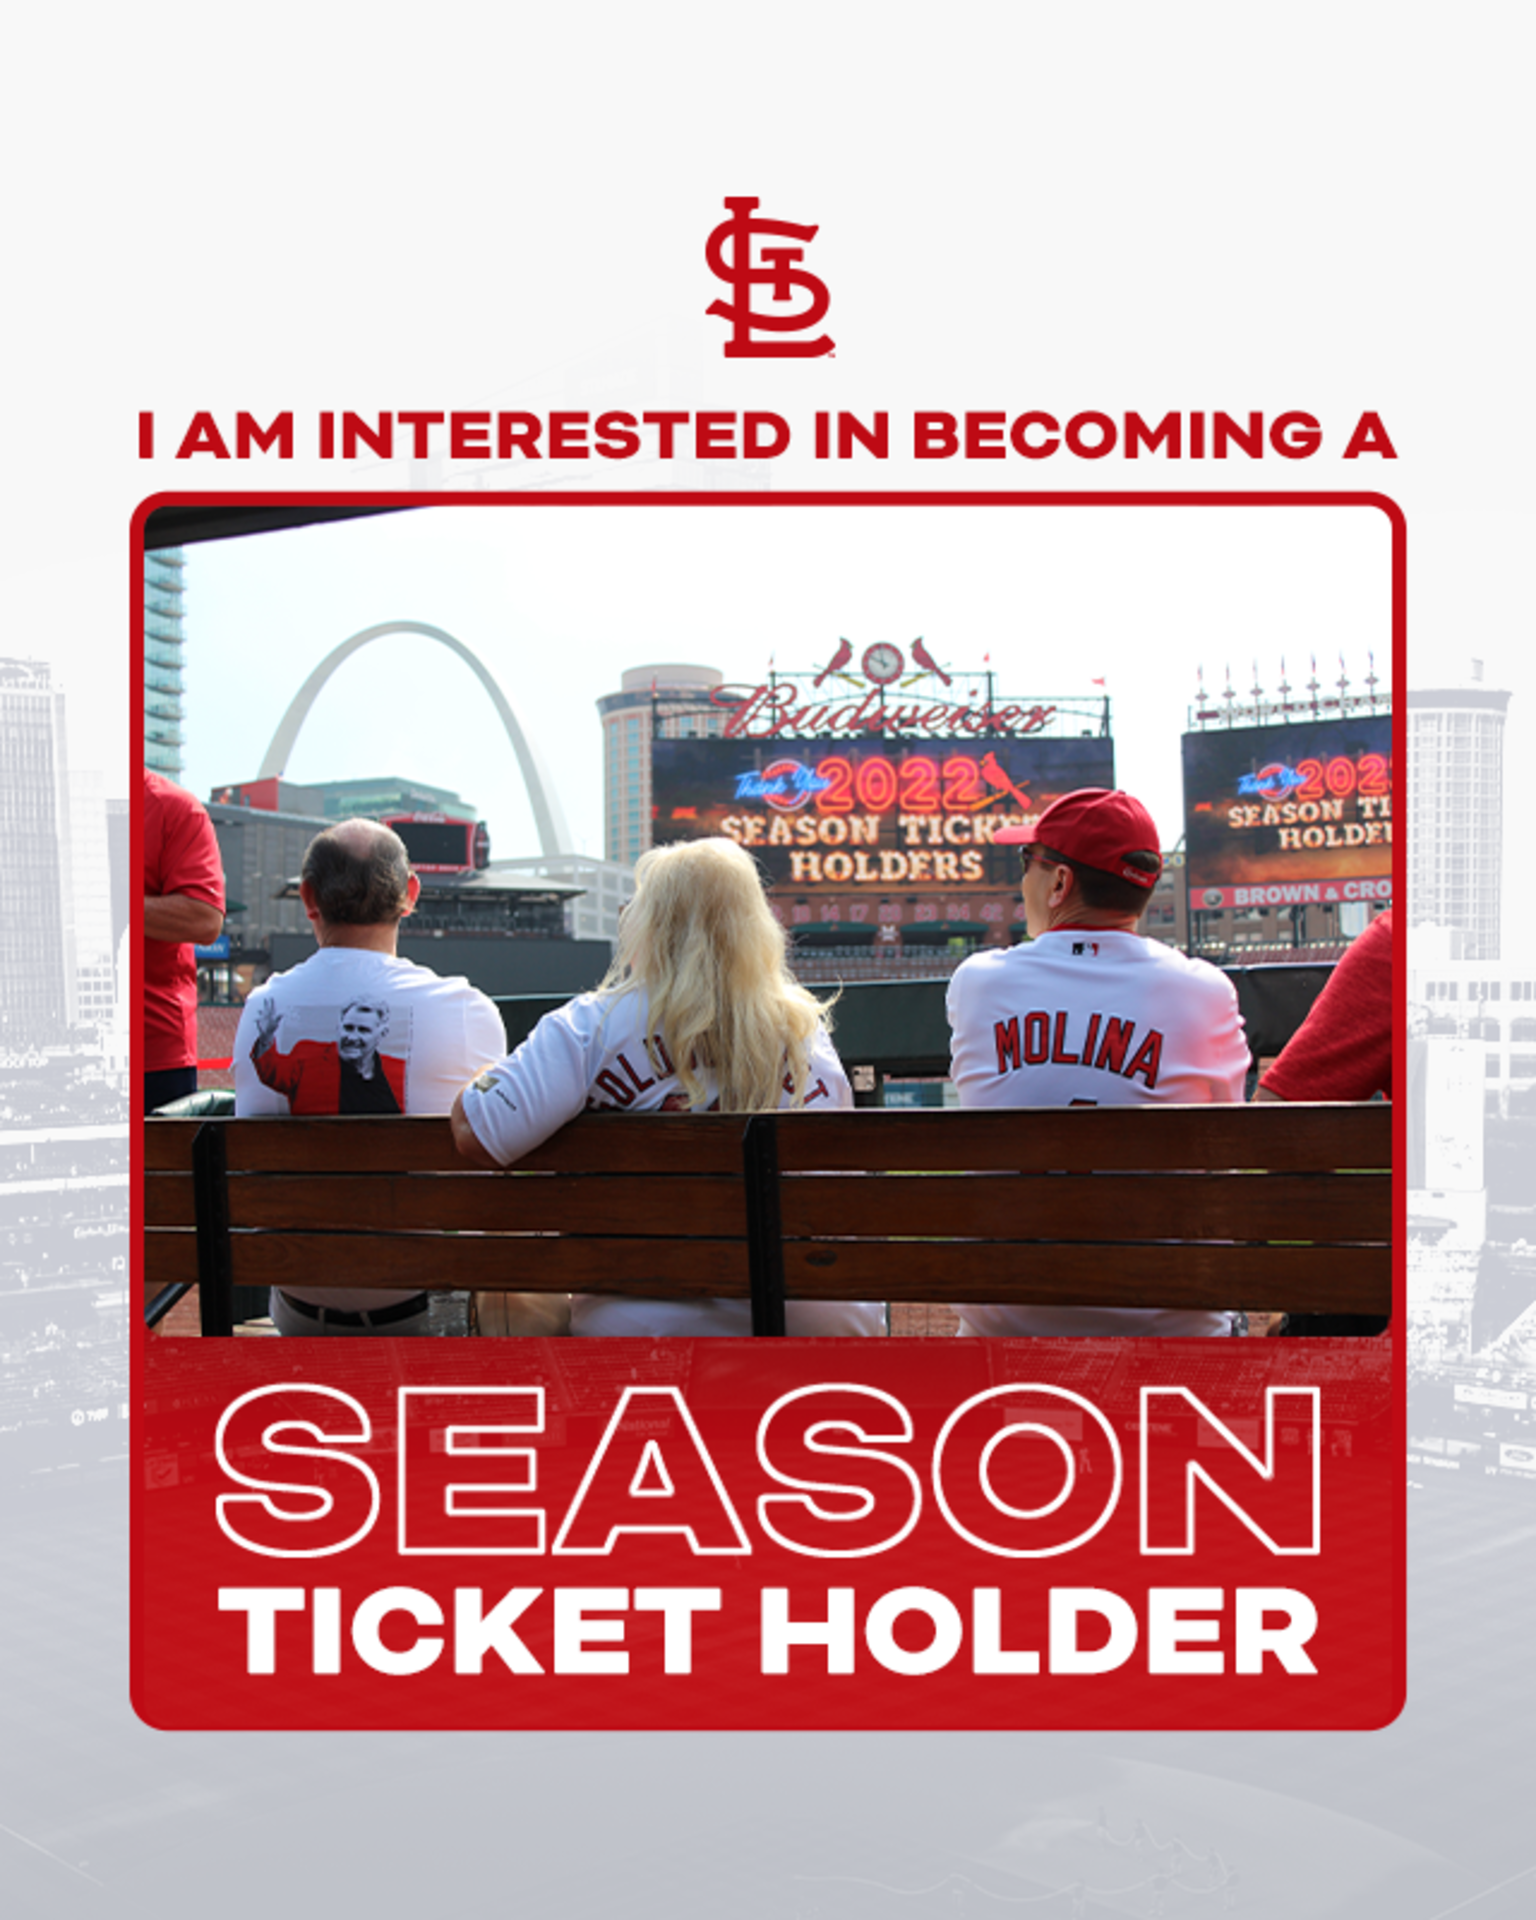 Buy Cardinals Season Tickets